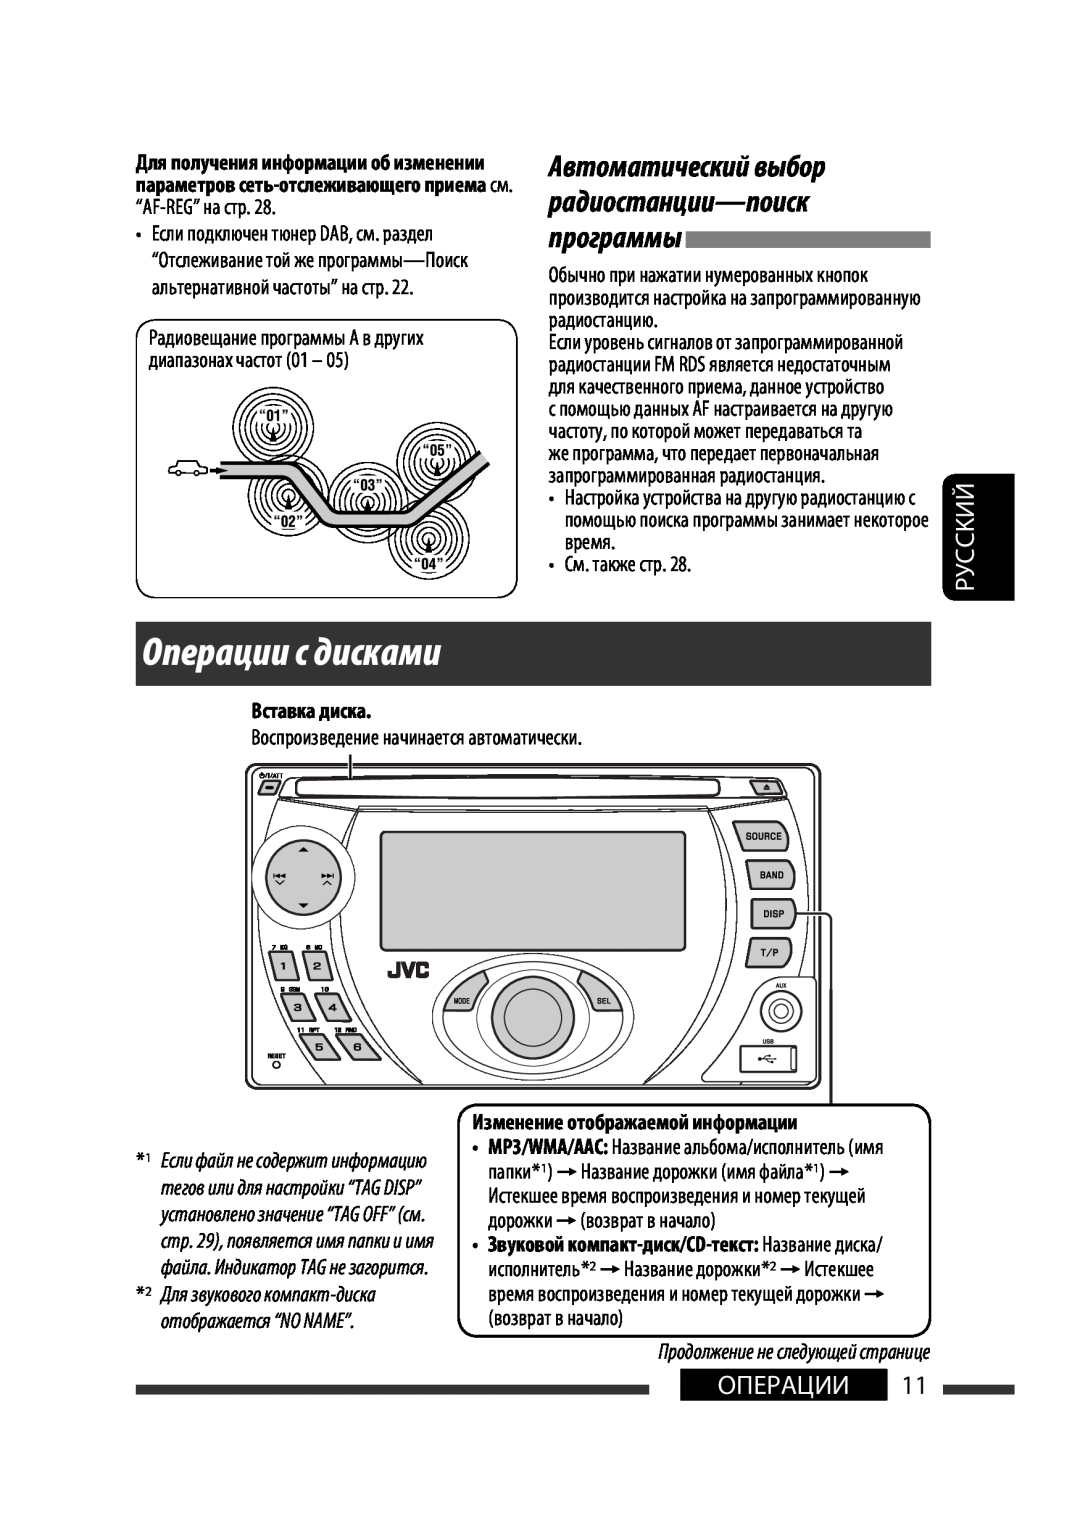 JVC KW-XG701 manual Операции с дисками, Автоматический выбор радиостанции-поискпрограммы, Вставка диска, Руcckий 